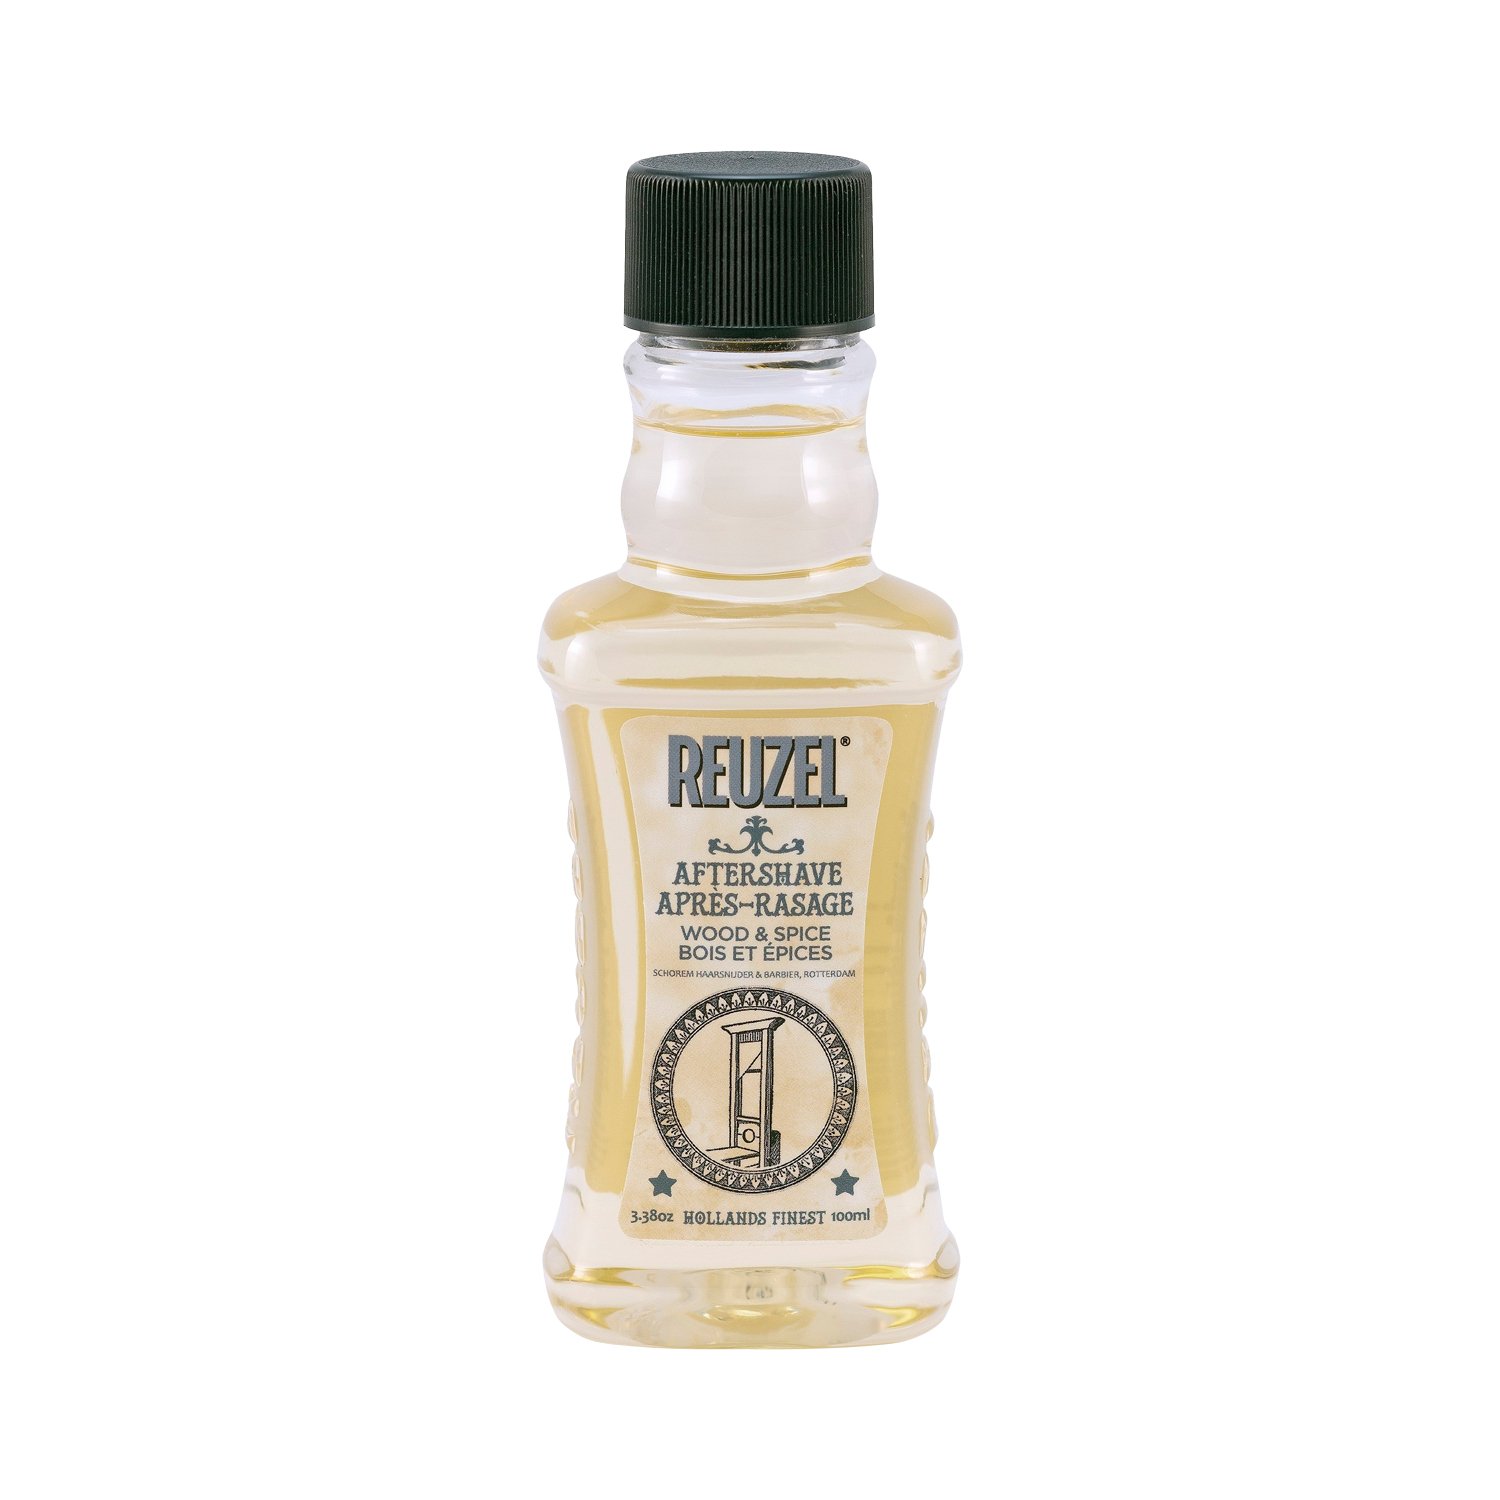 Reuzel - Aftershave Wood & Spice